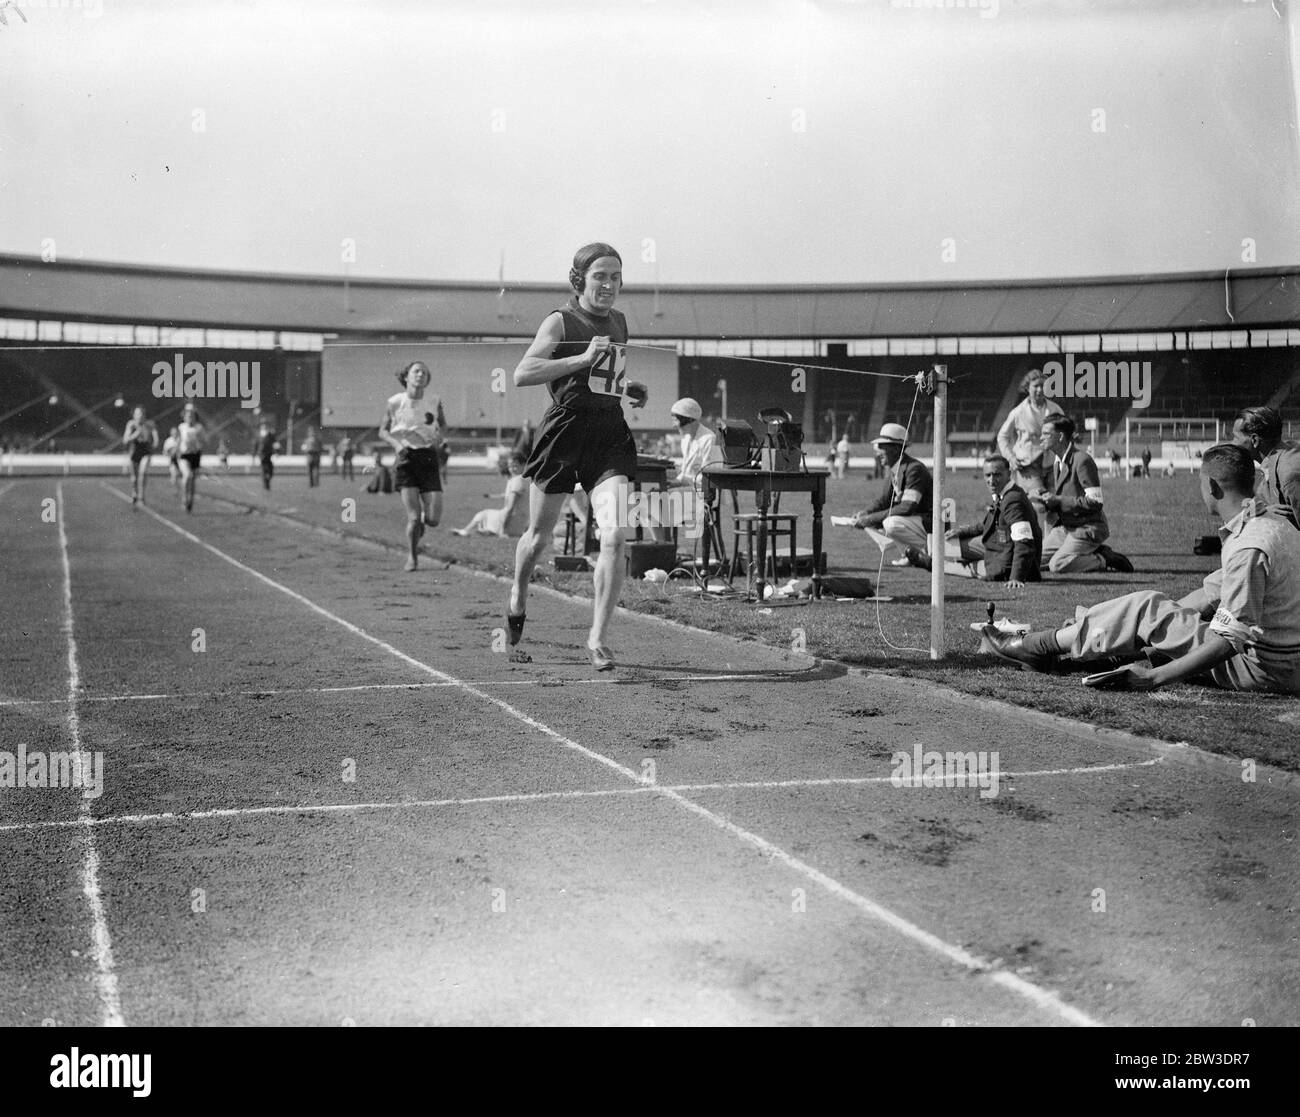 Incontro internazionale delle atlete femminili nella Città Bianca . Foto spettacoli , Miss Nellie Halstead stabilisce un nuovo record nei 800 metri , ( 2 minuti 13 secondi 3 / 10 secondi . 10 agosto 1935 Foto Stock